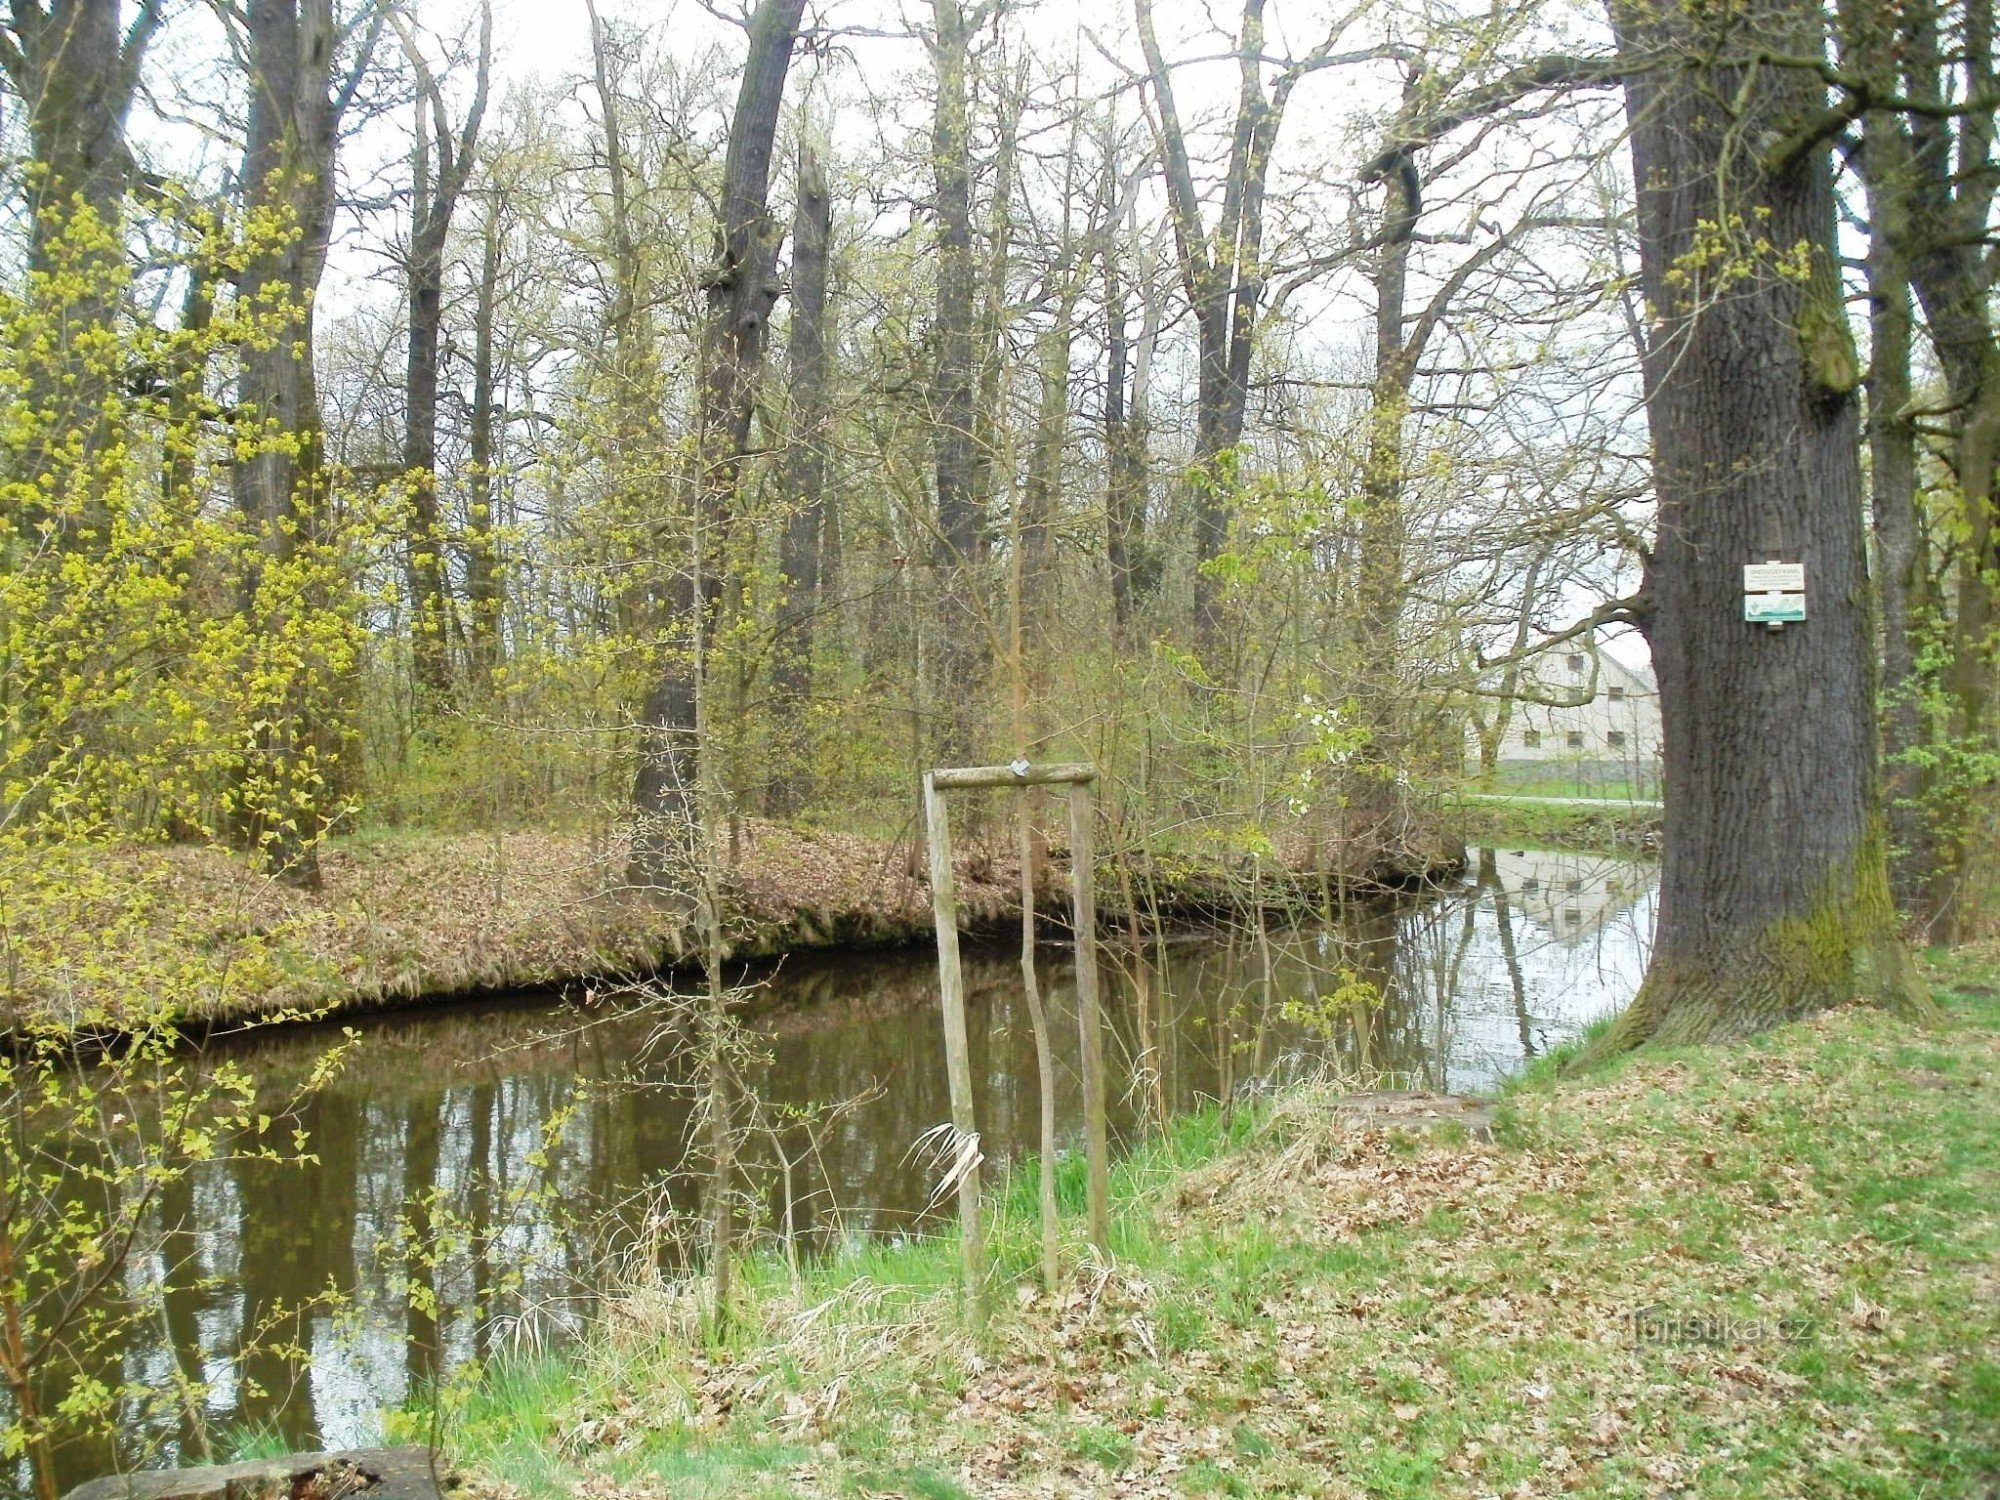 encrucijada turística Lázně Bohdaneč - canal Opatovice